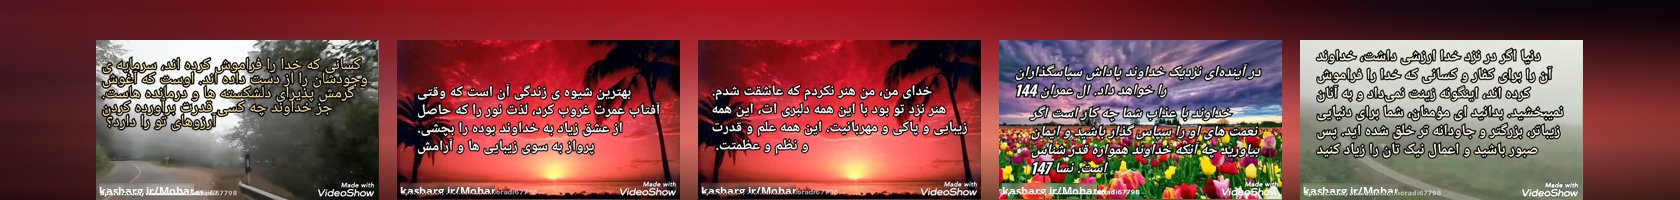  Mohammad.moradi67798